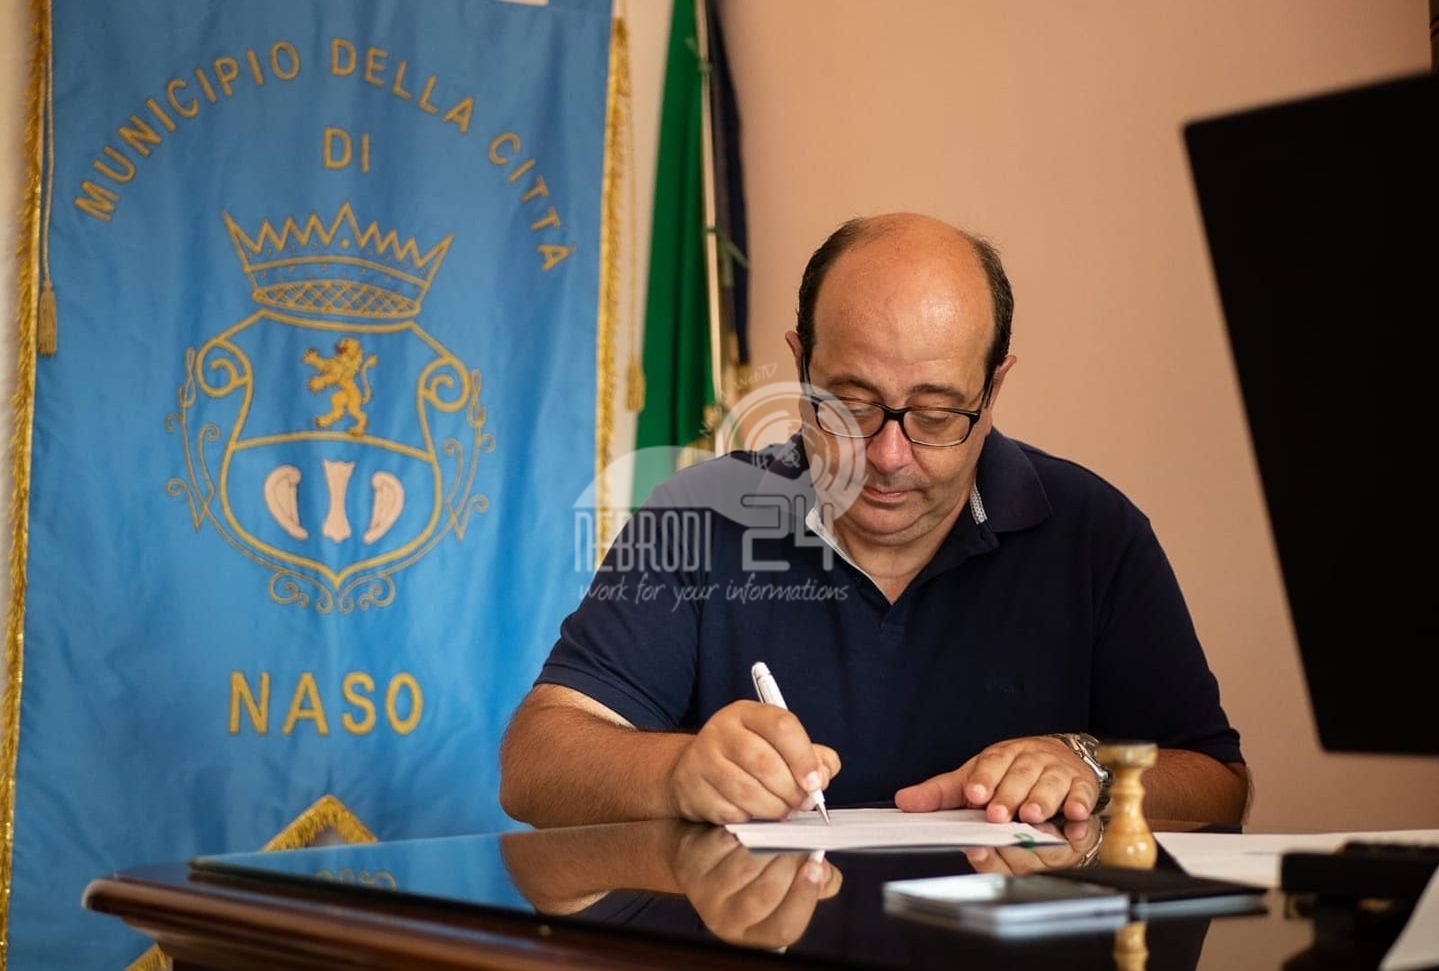 Naso – Dolore infinito…è morto il presidente del consiglio comunale, Giovanni Rubino